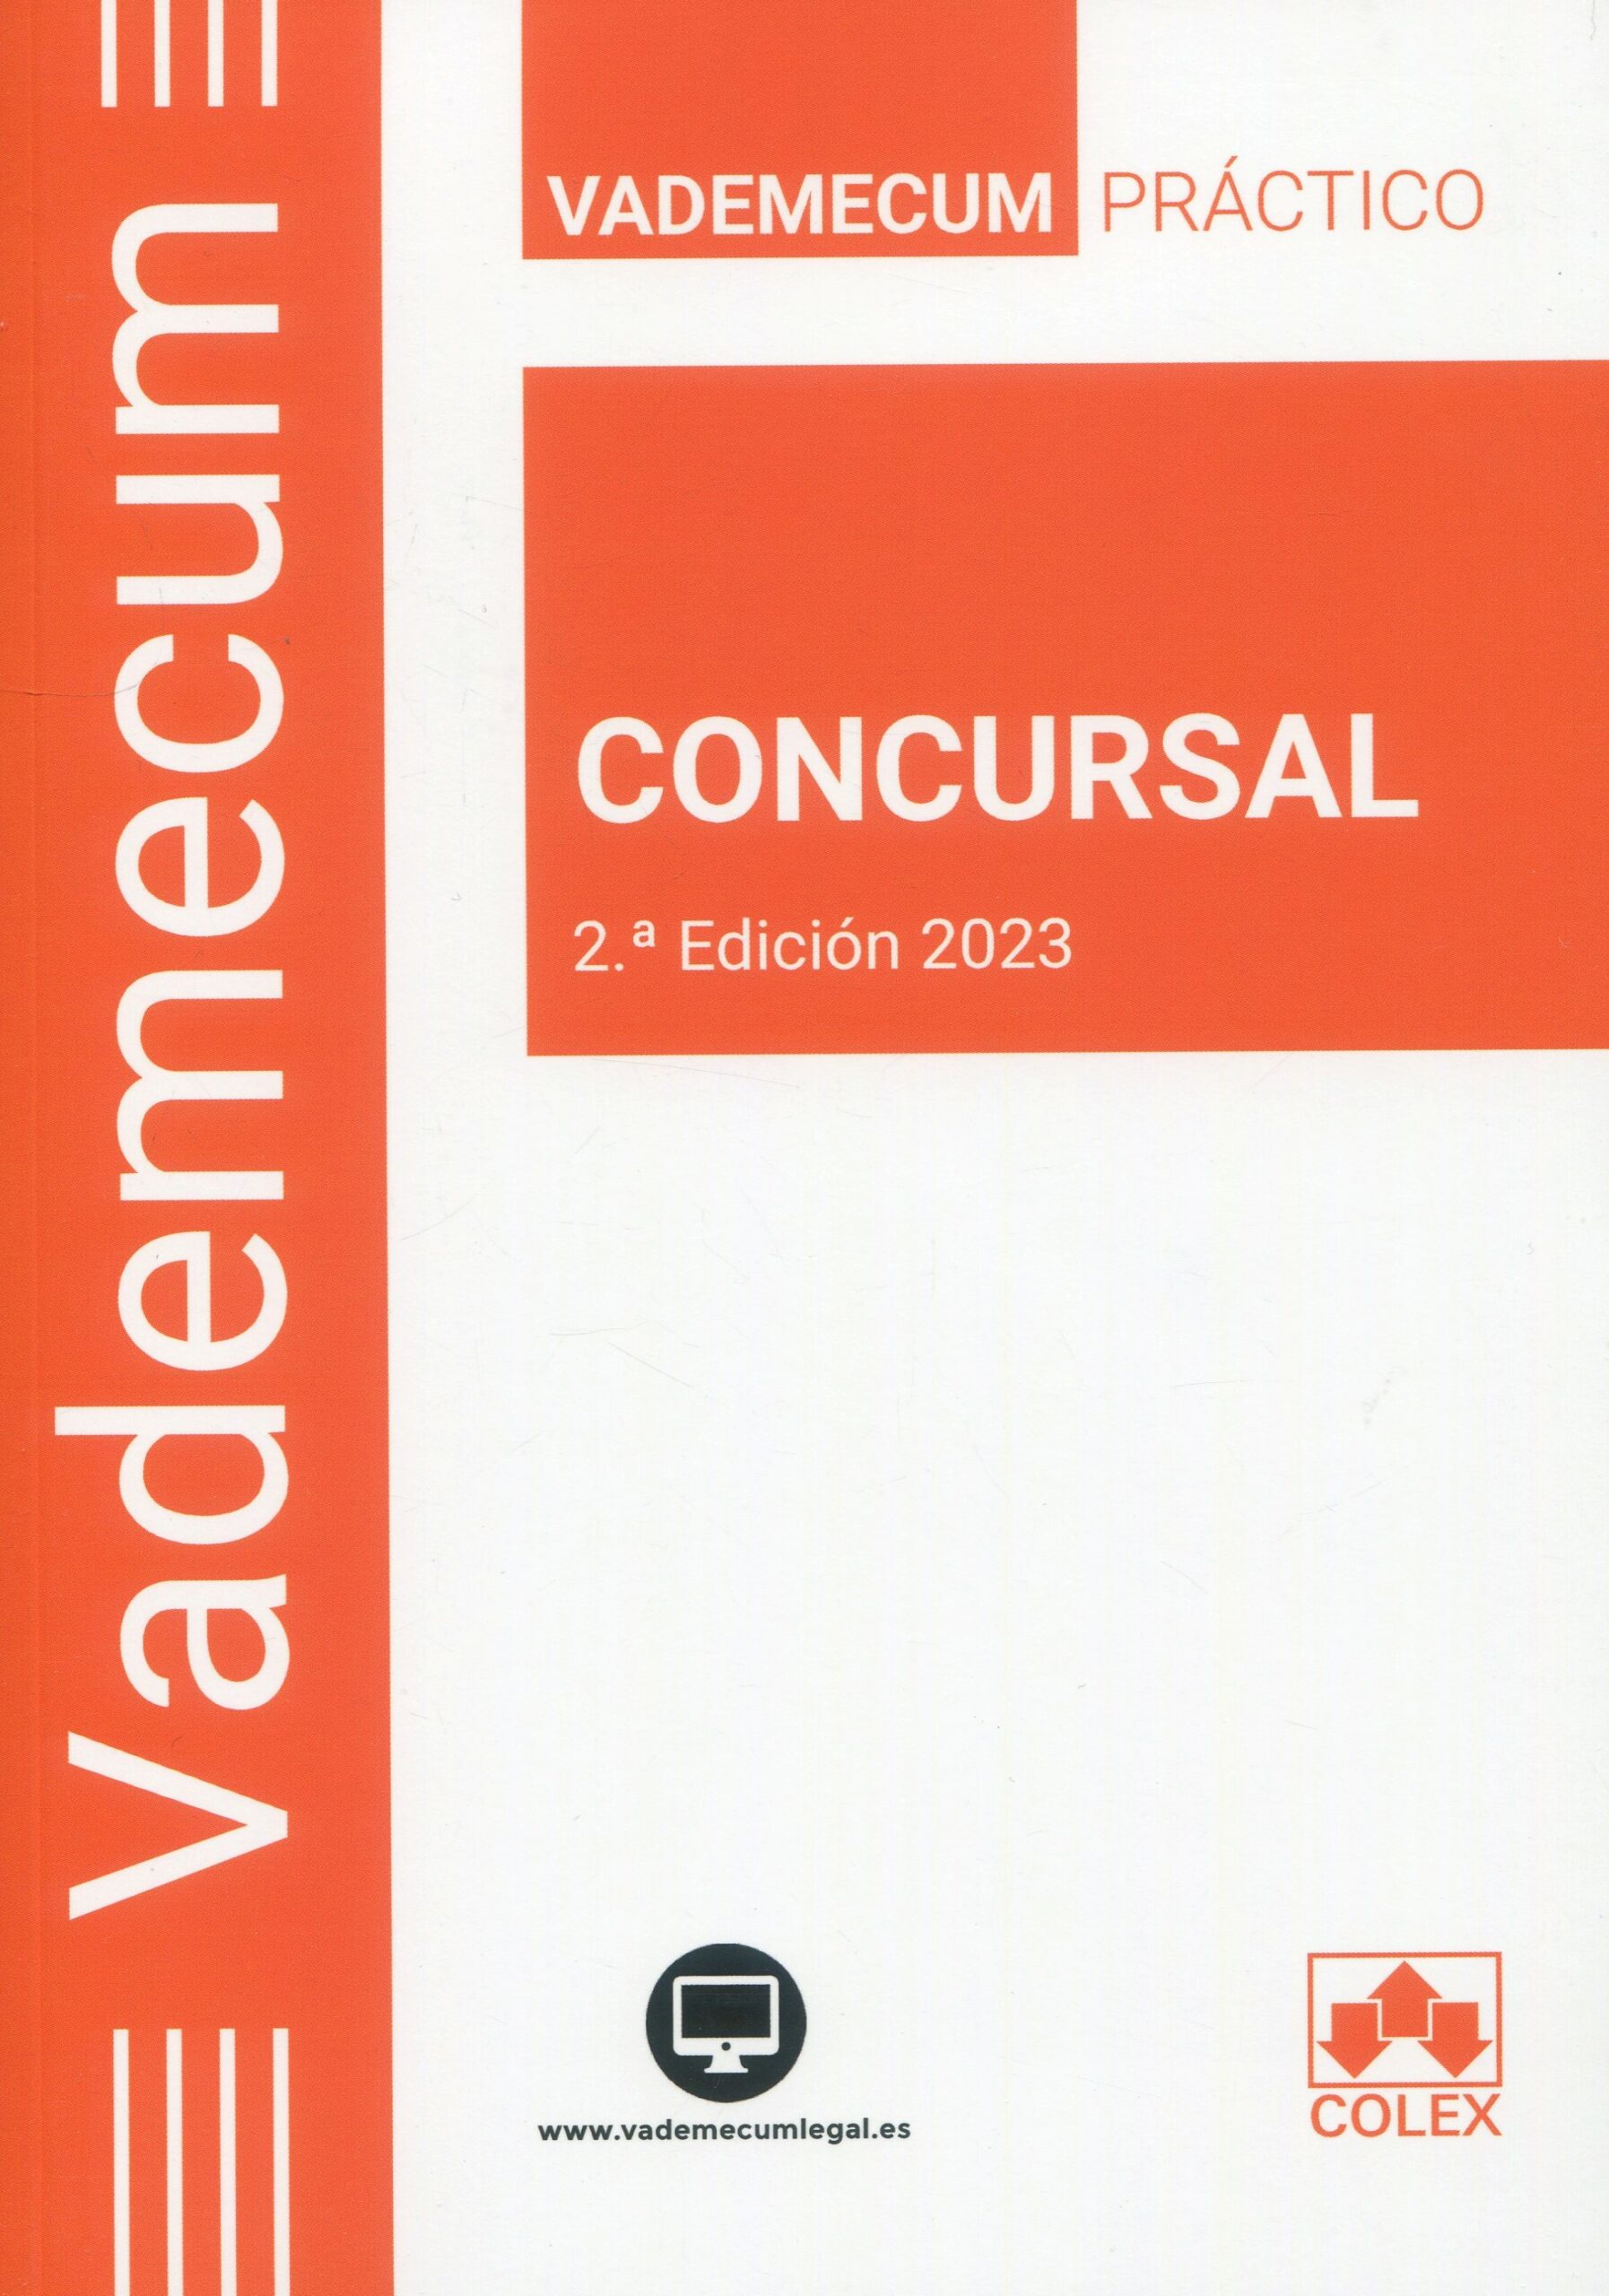 Vademecum Concursal 2023